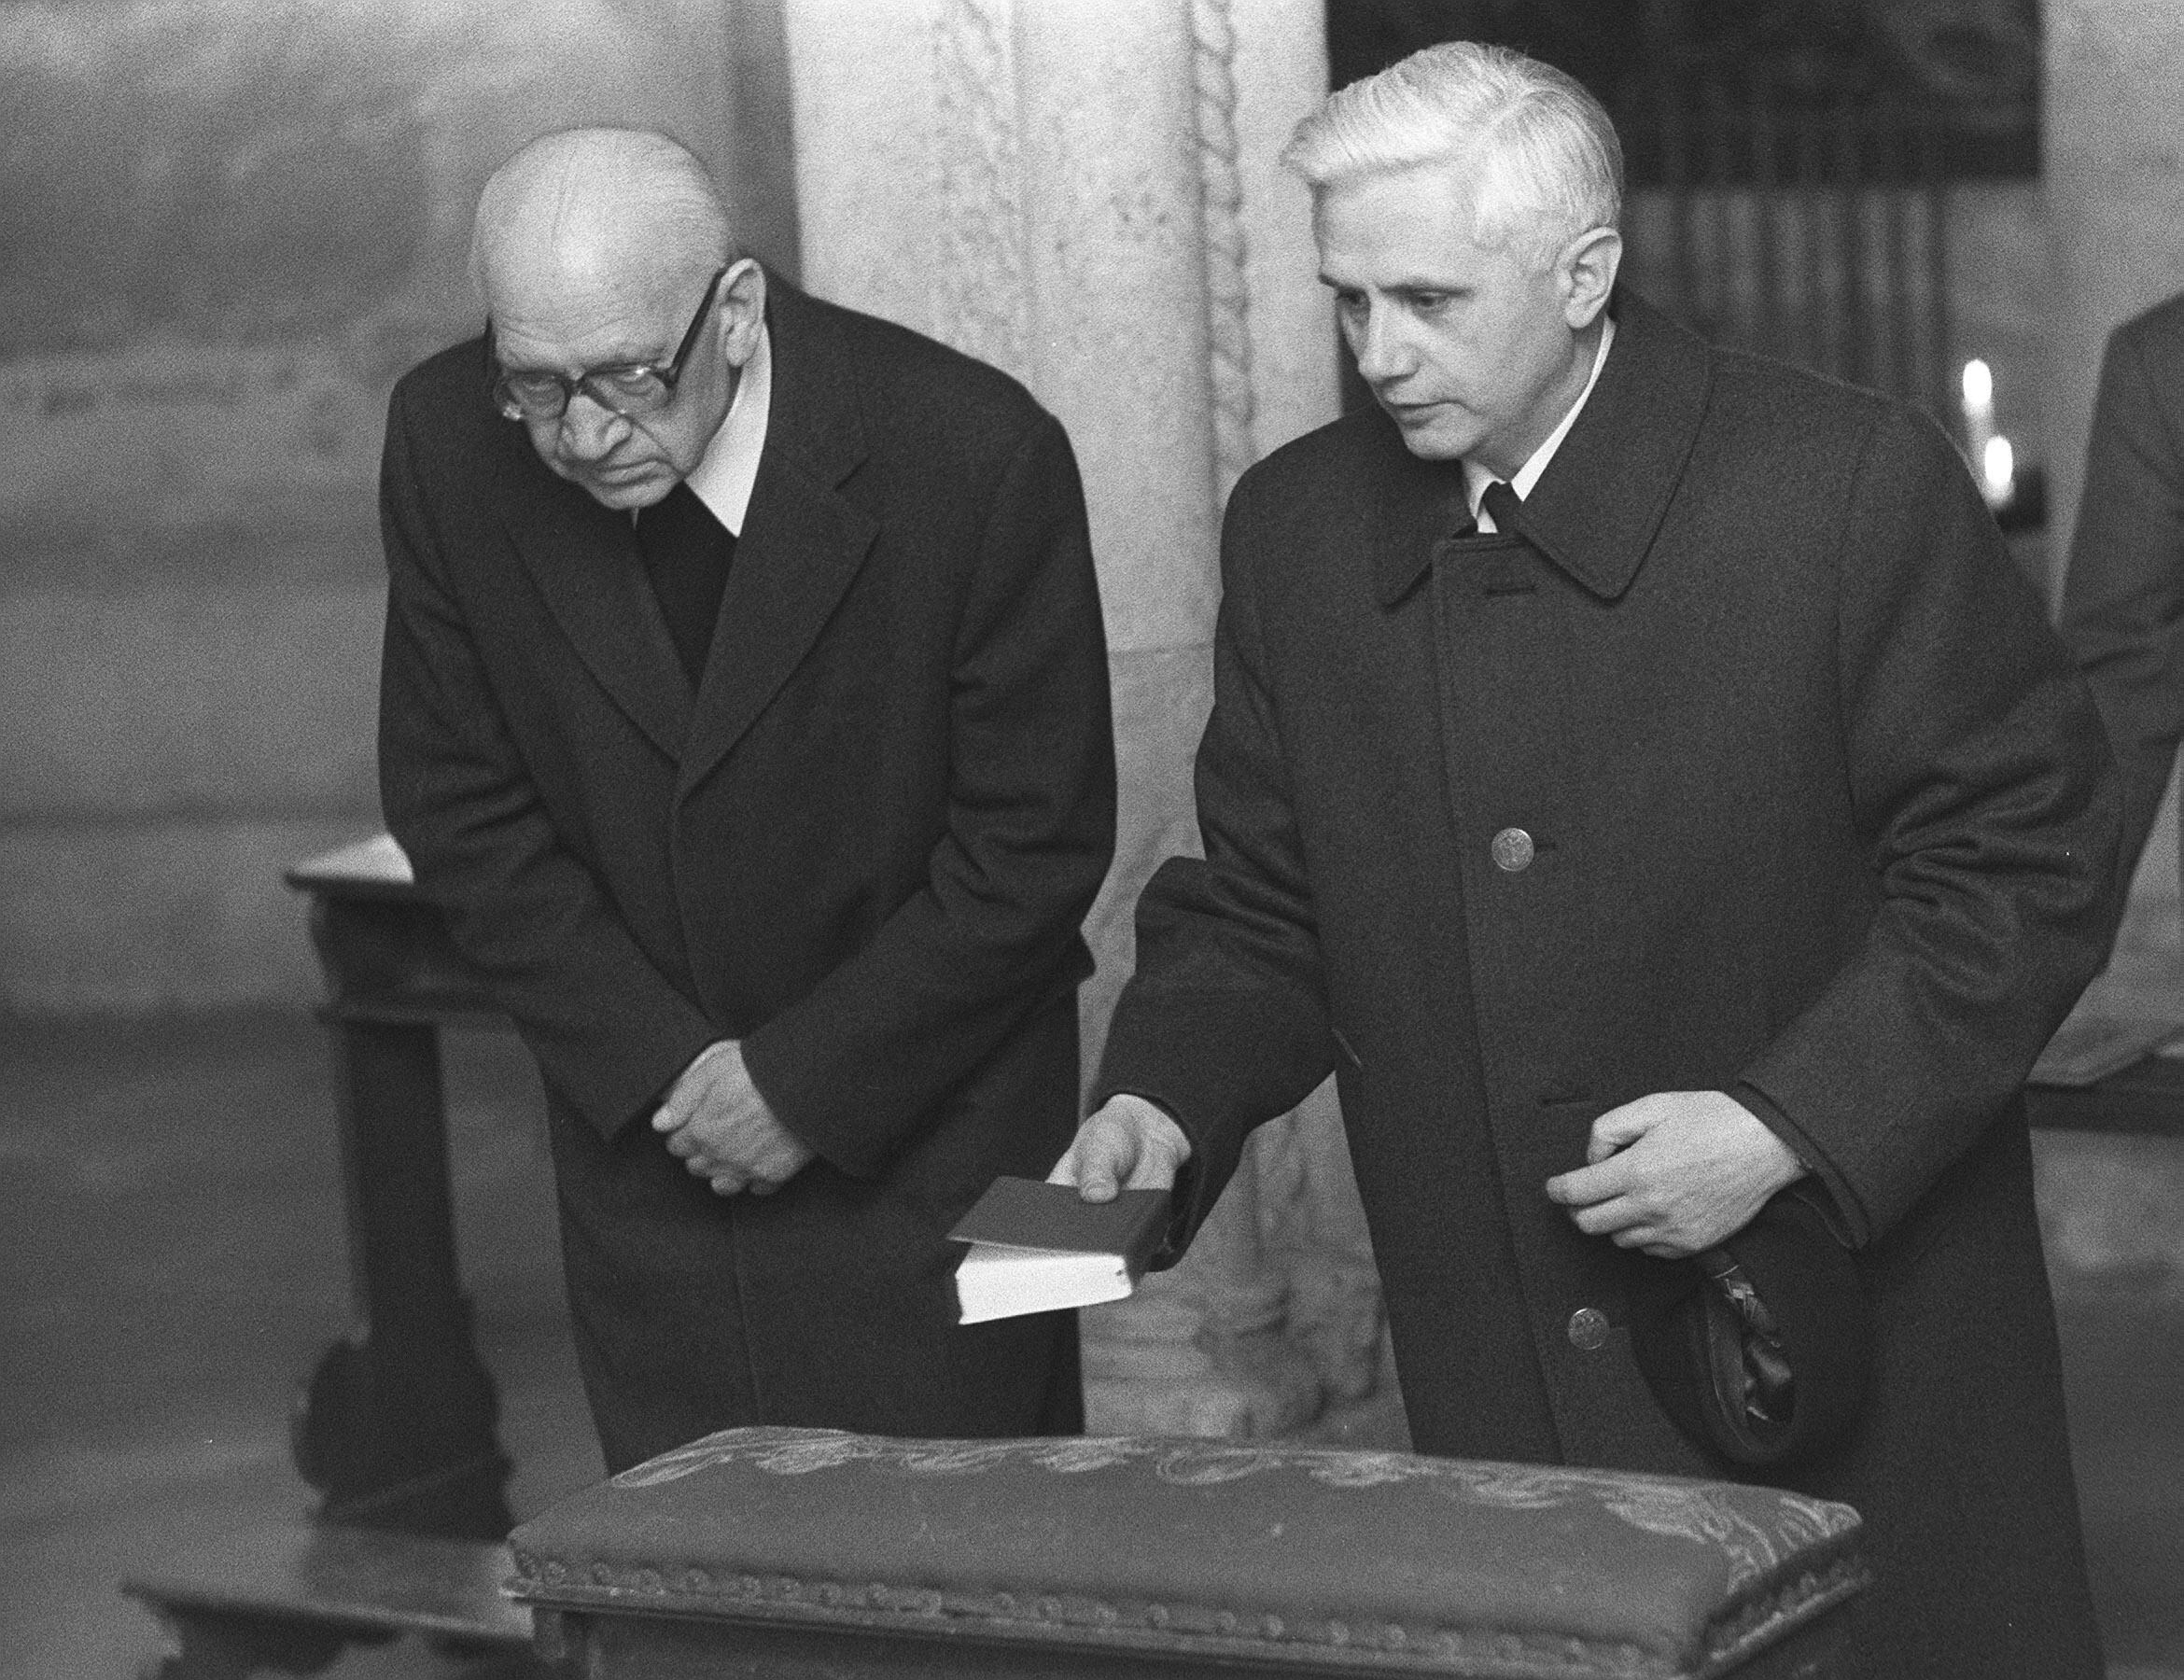 En esta imagen de archivo, Joseph Ratzinger (derecha), recién nombrado arzobispo de Múnich y Freising, reza con el obispo Erns Tewes en la cripta de la catedral de Freising, el 31 de marzo de 1977, en el sur de Alemania. Décadas más tarde, Ratzinger se convertiría en el papa Benedicto XVI (AP Foto/Dieter Endlicher, archivo)